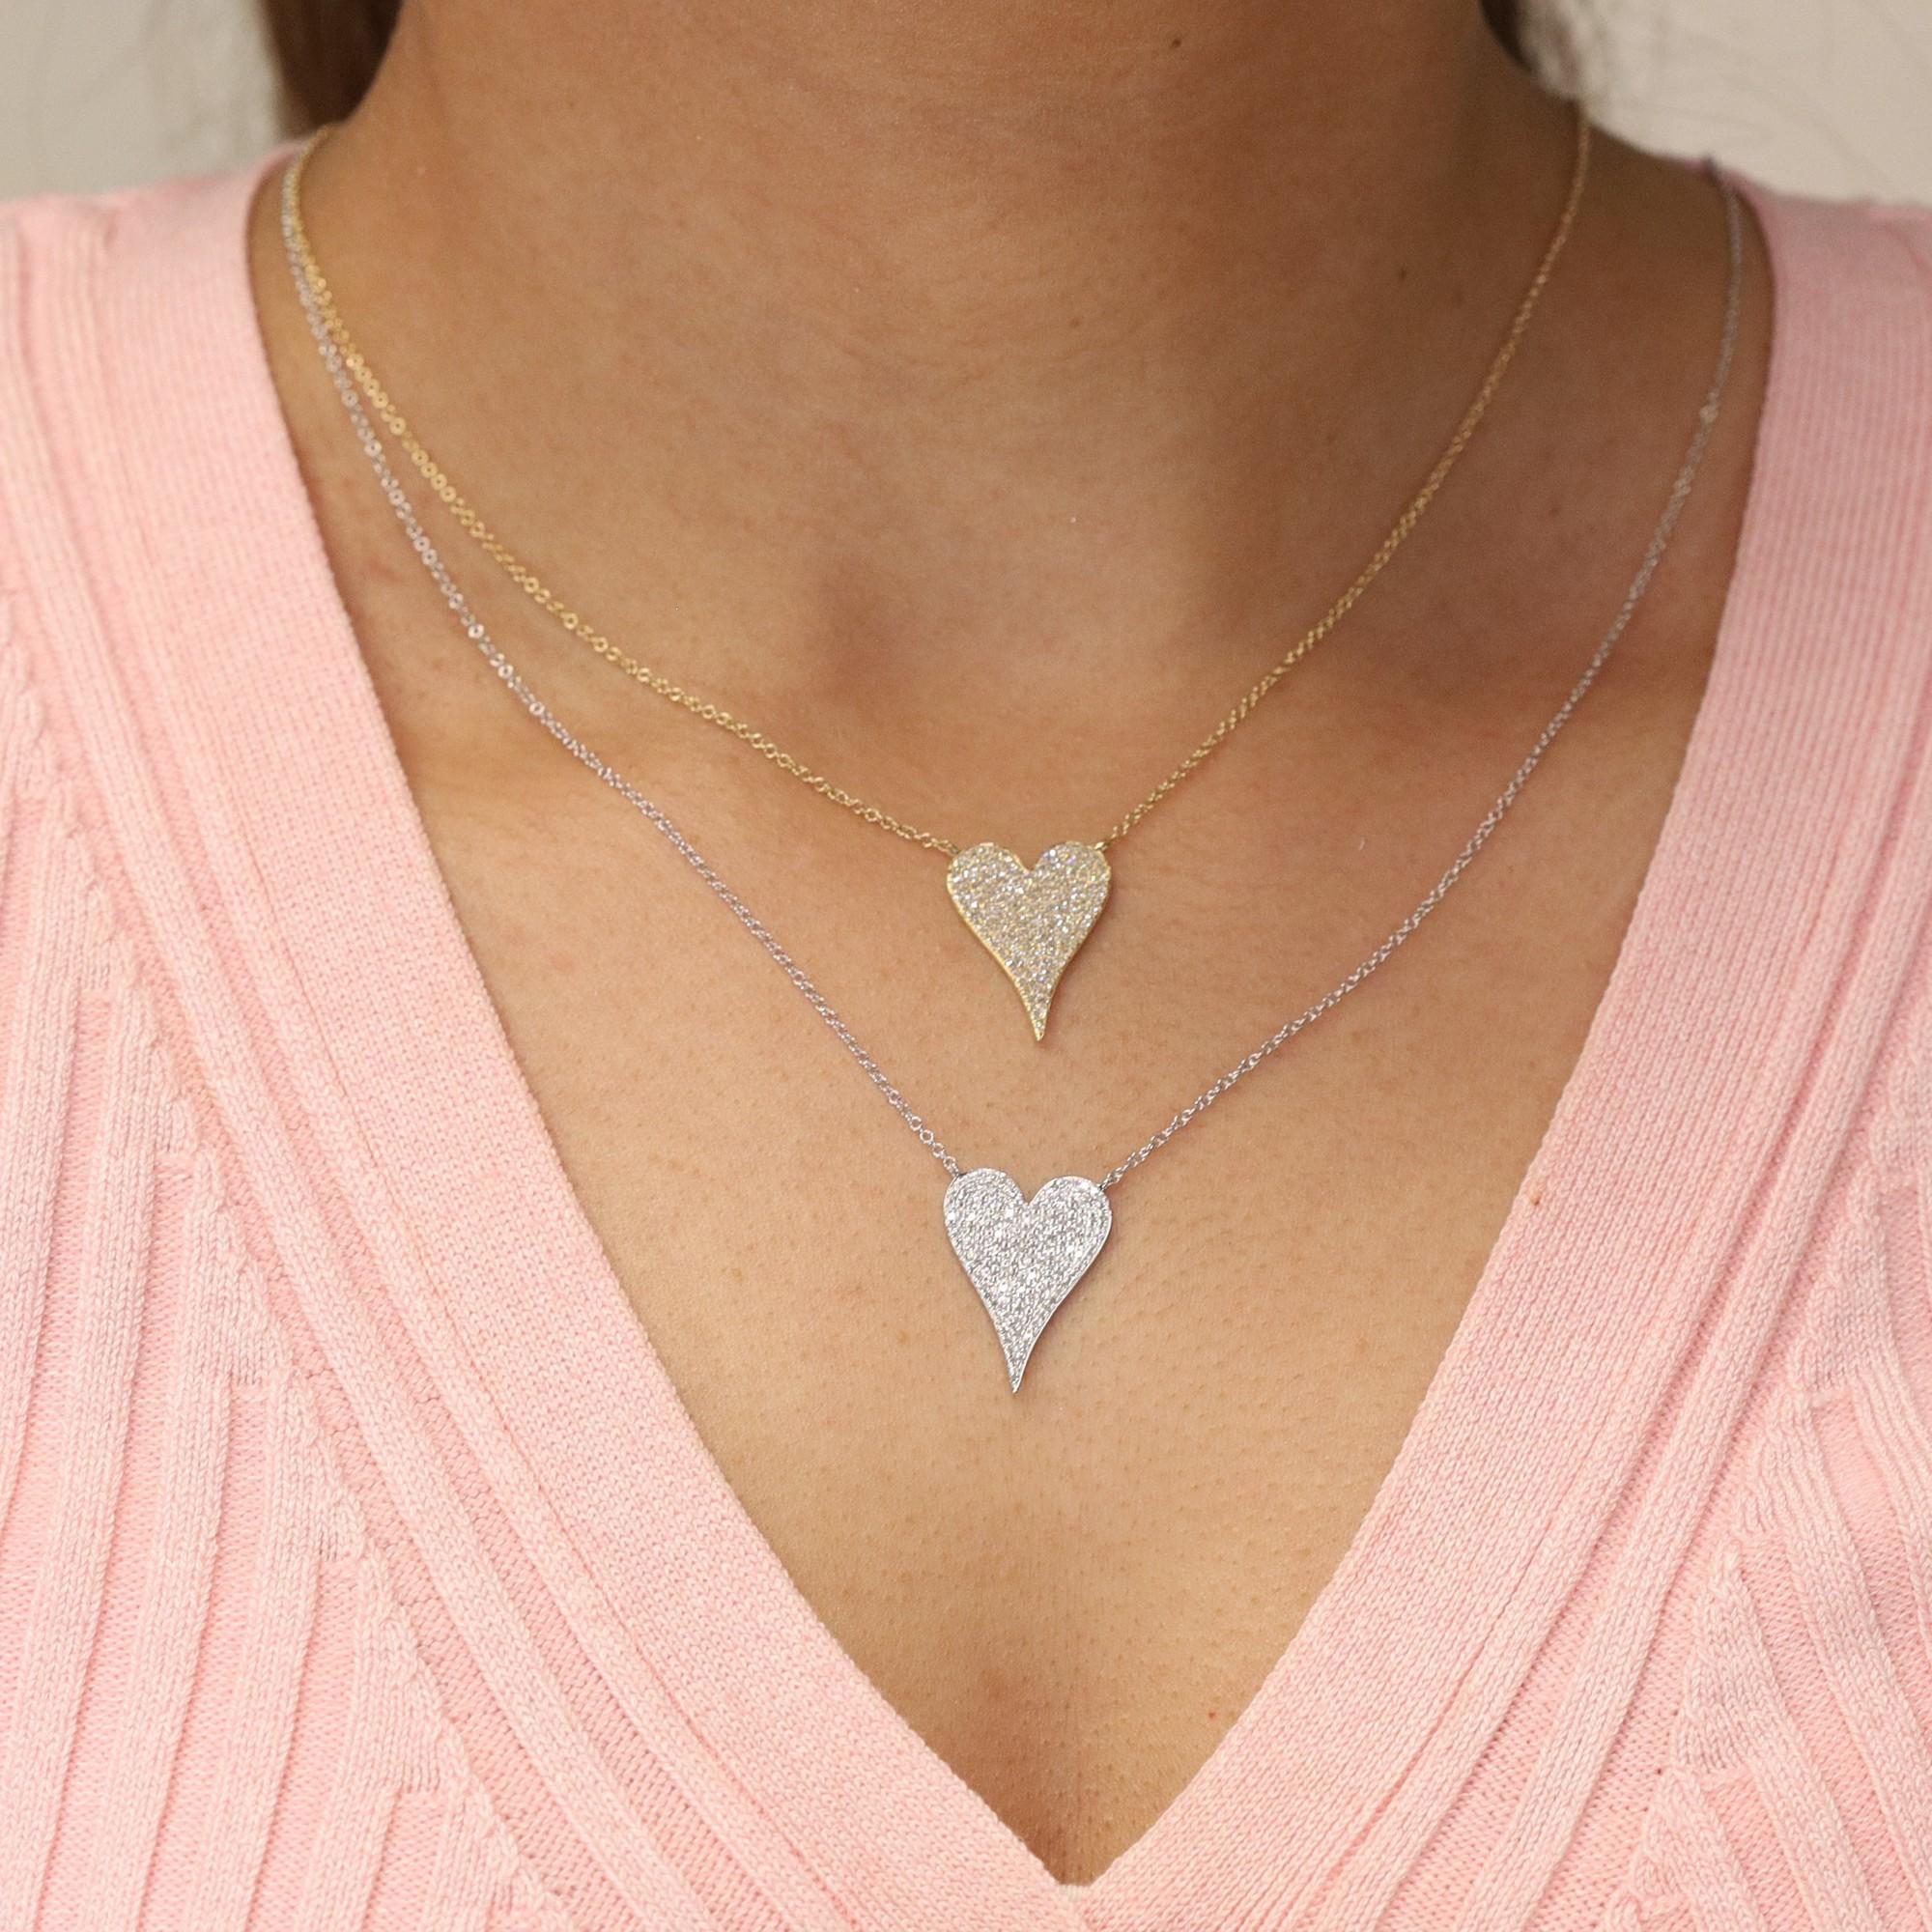 Round Cut Rachel Koen Pave Diamond Heart Pendant Necklace 14K White Gold 0.43cttw For Sale